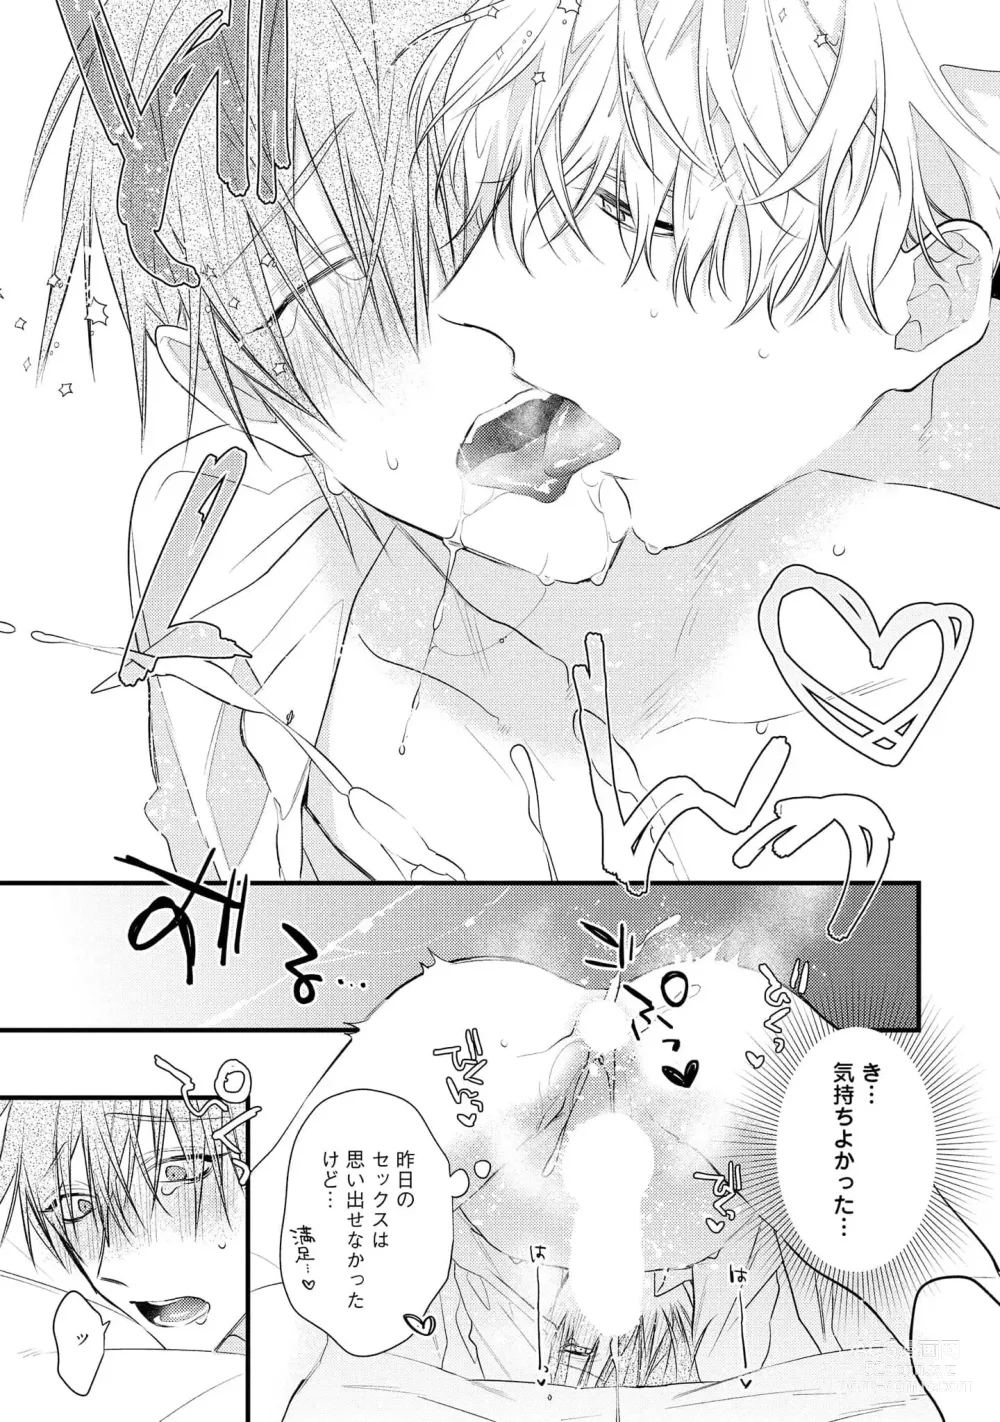 Page 31 of manga Ecchi wa shuu 7 Kibou Desu!